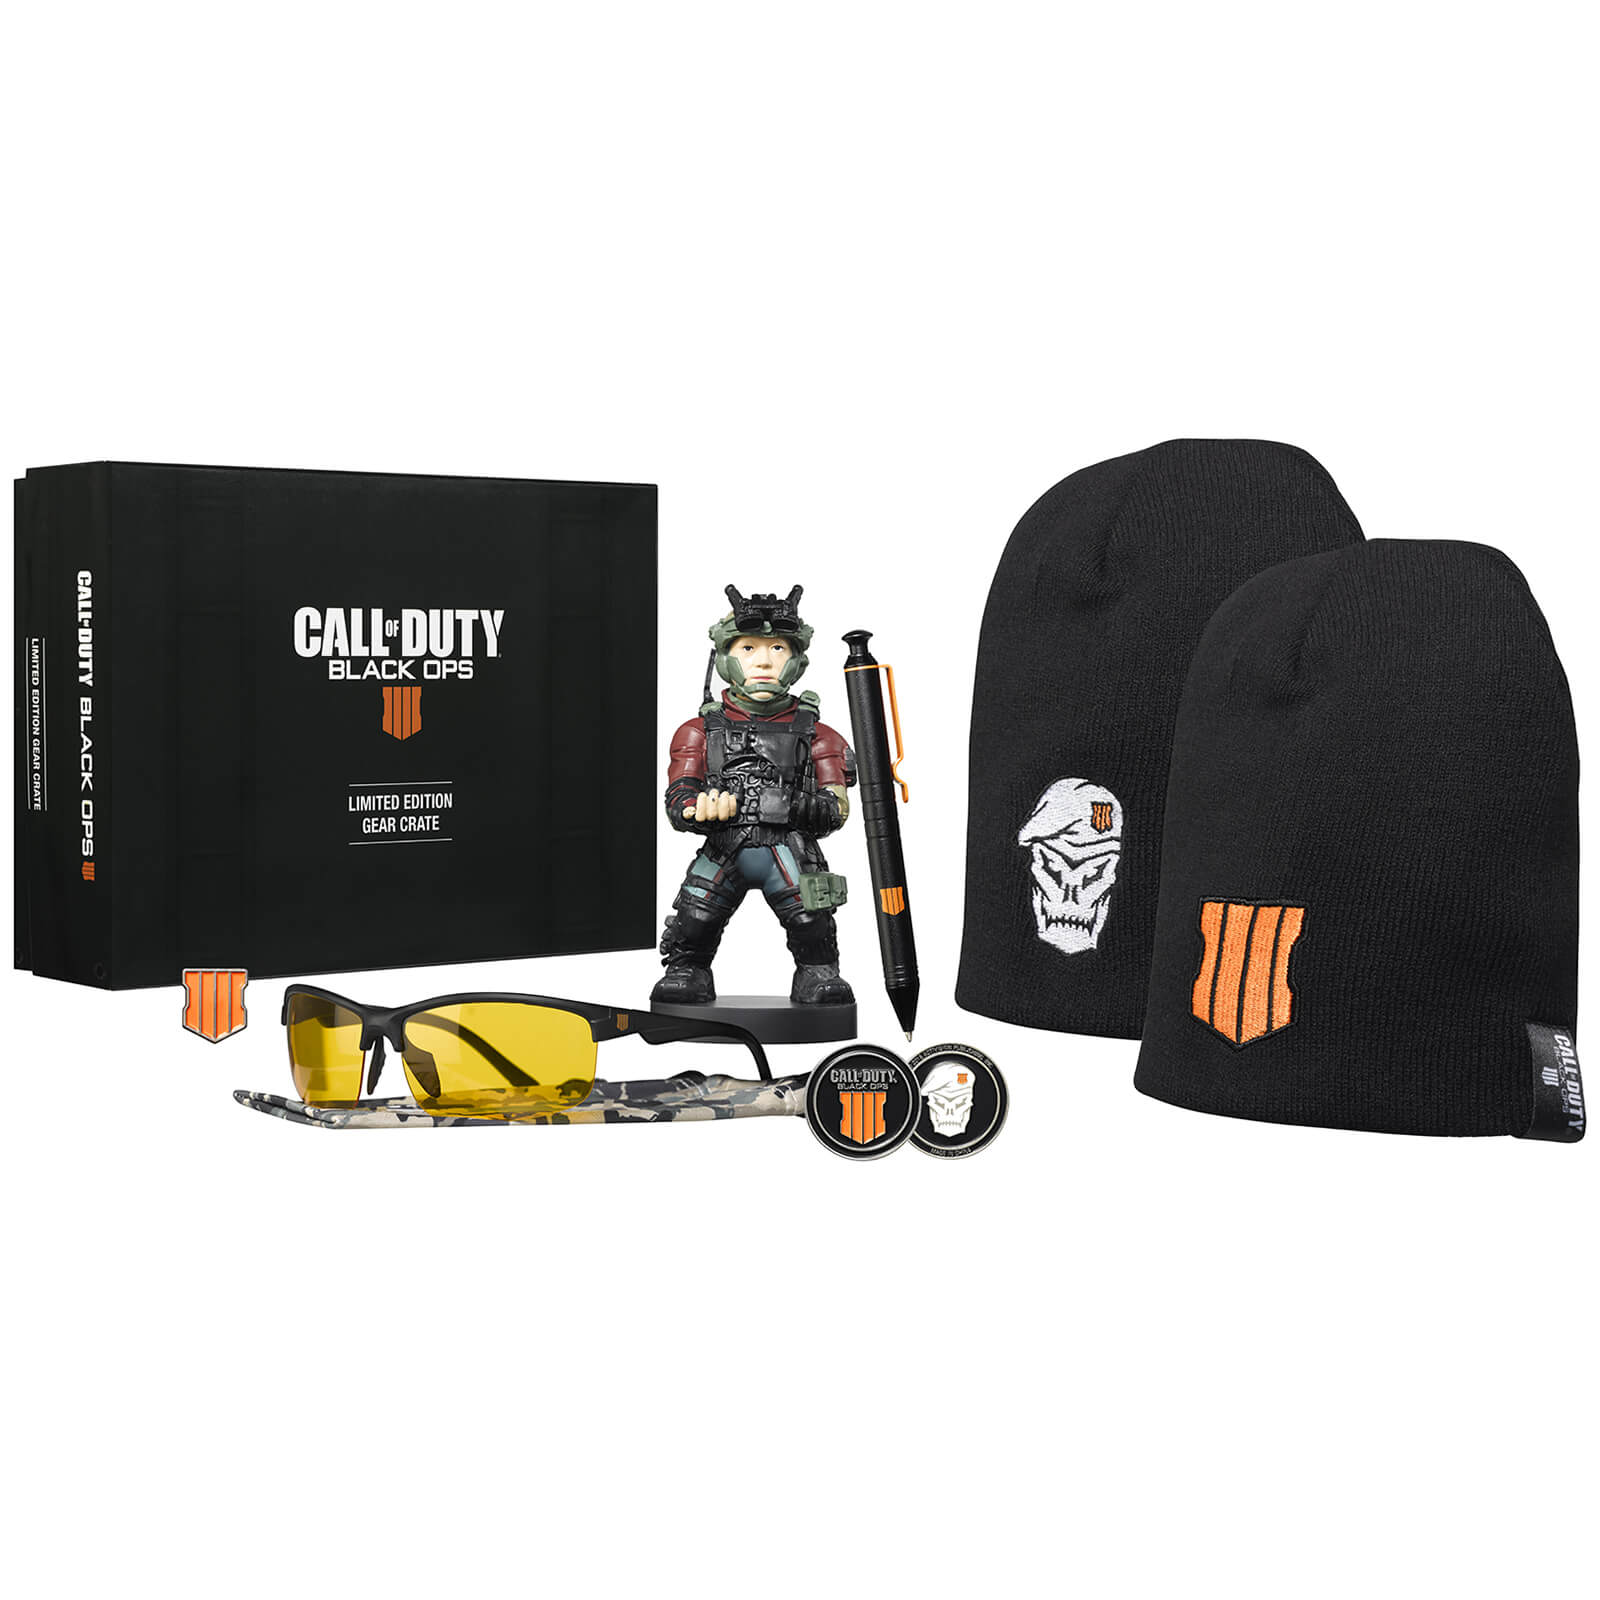 Call of Duty Black Ops 4 Limited Edition Gear Crate (Szemüveg nélkül) - Ajándéktárgyak Ajándéktárgyak